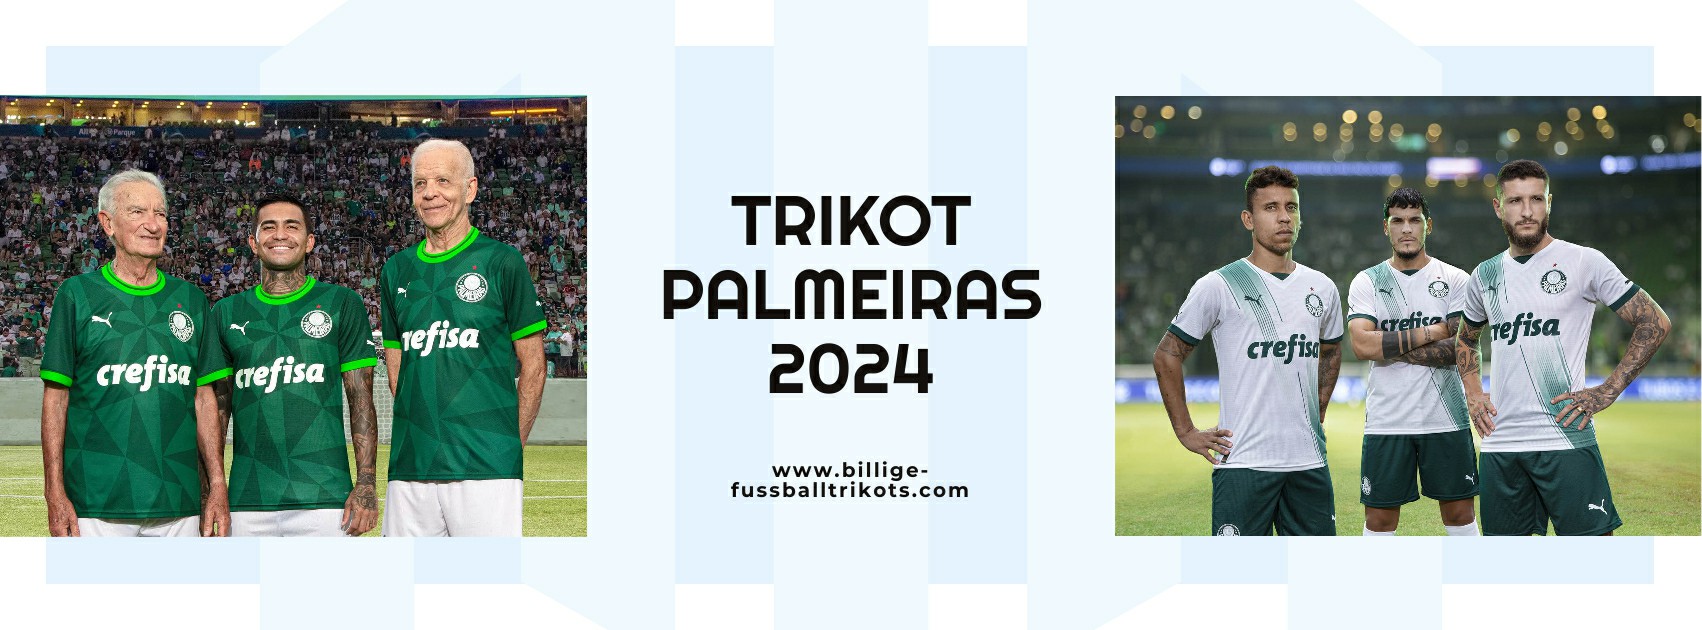 Palmeiras Trikot 2024-2025